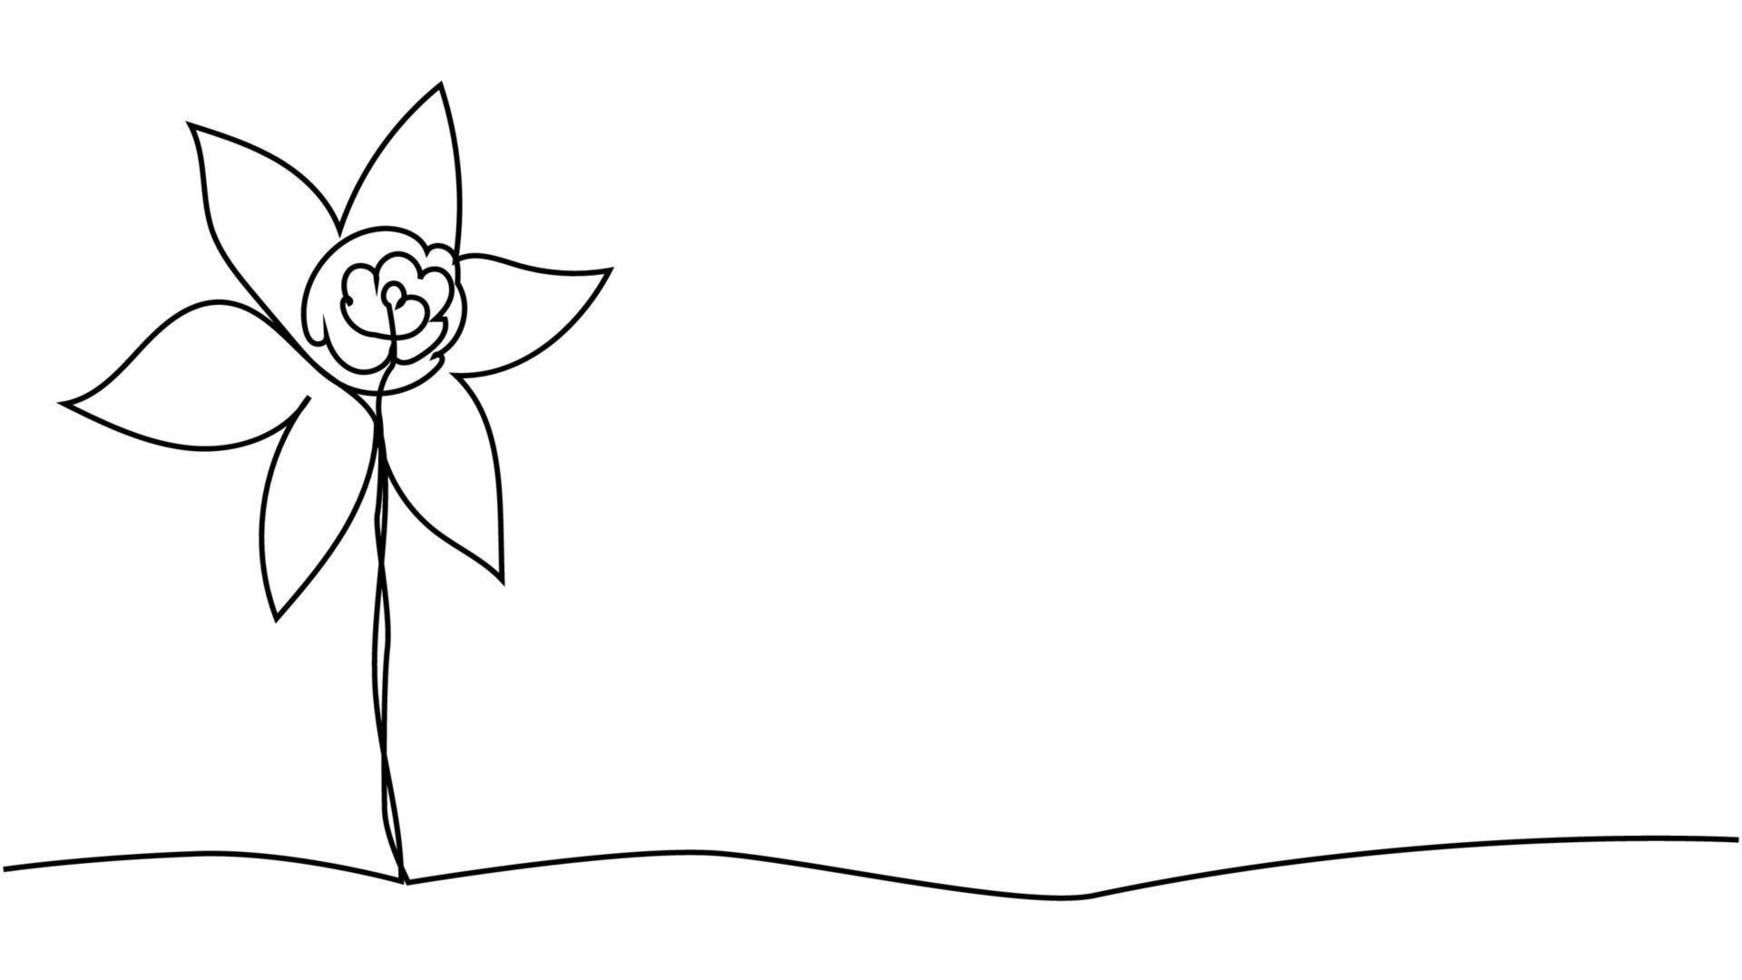 um desenho de linha única de narciso fresco de beleza para o logotipo do jardim. flor de narciso decorativa para imprimir vetor